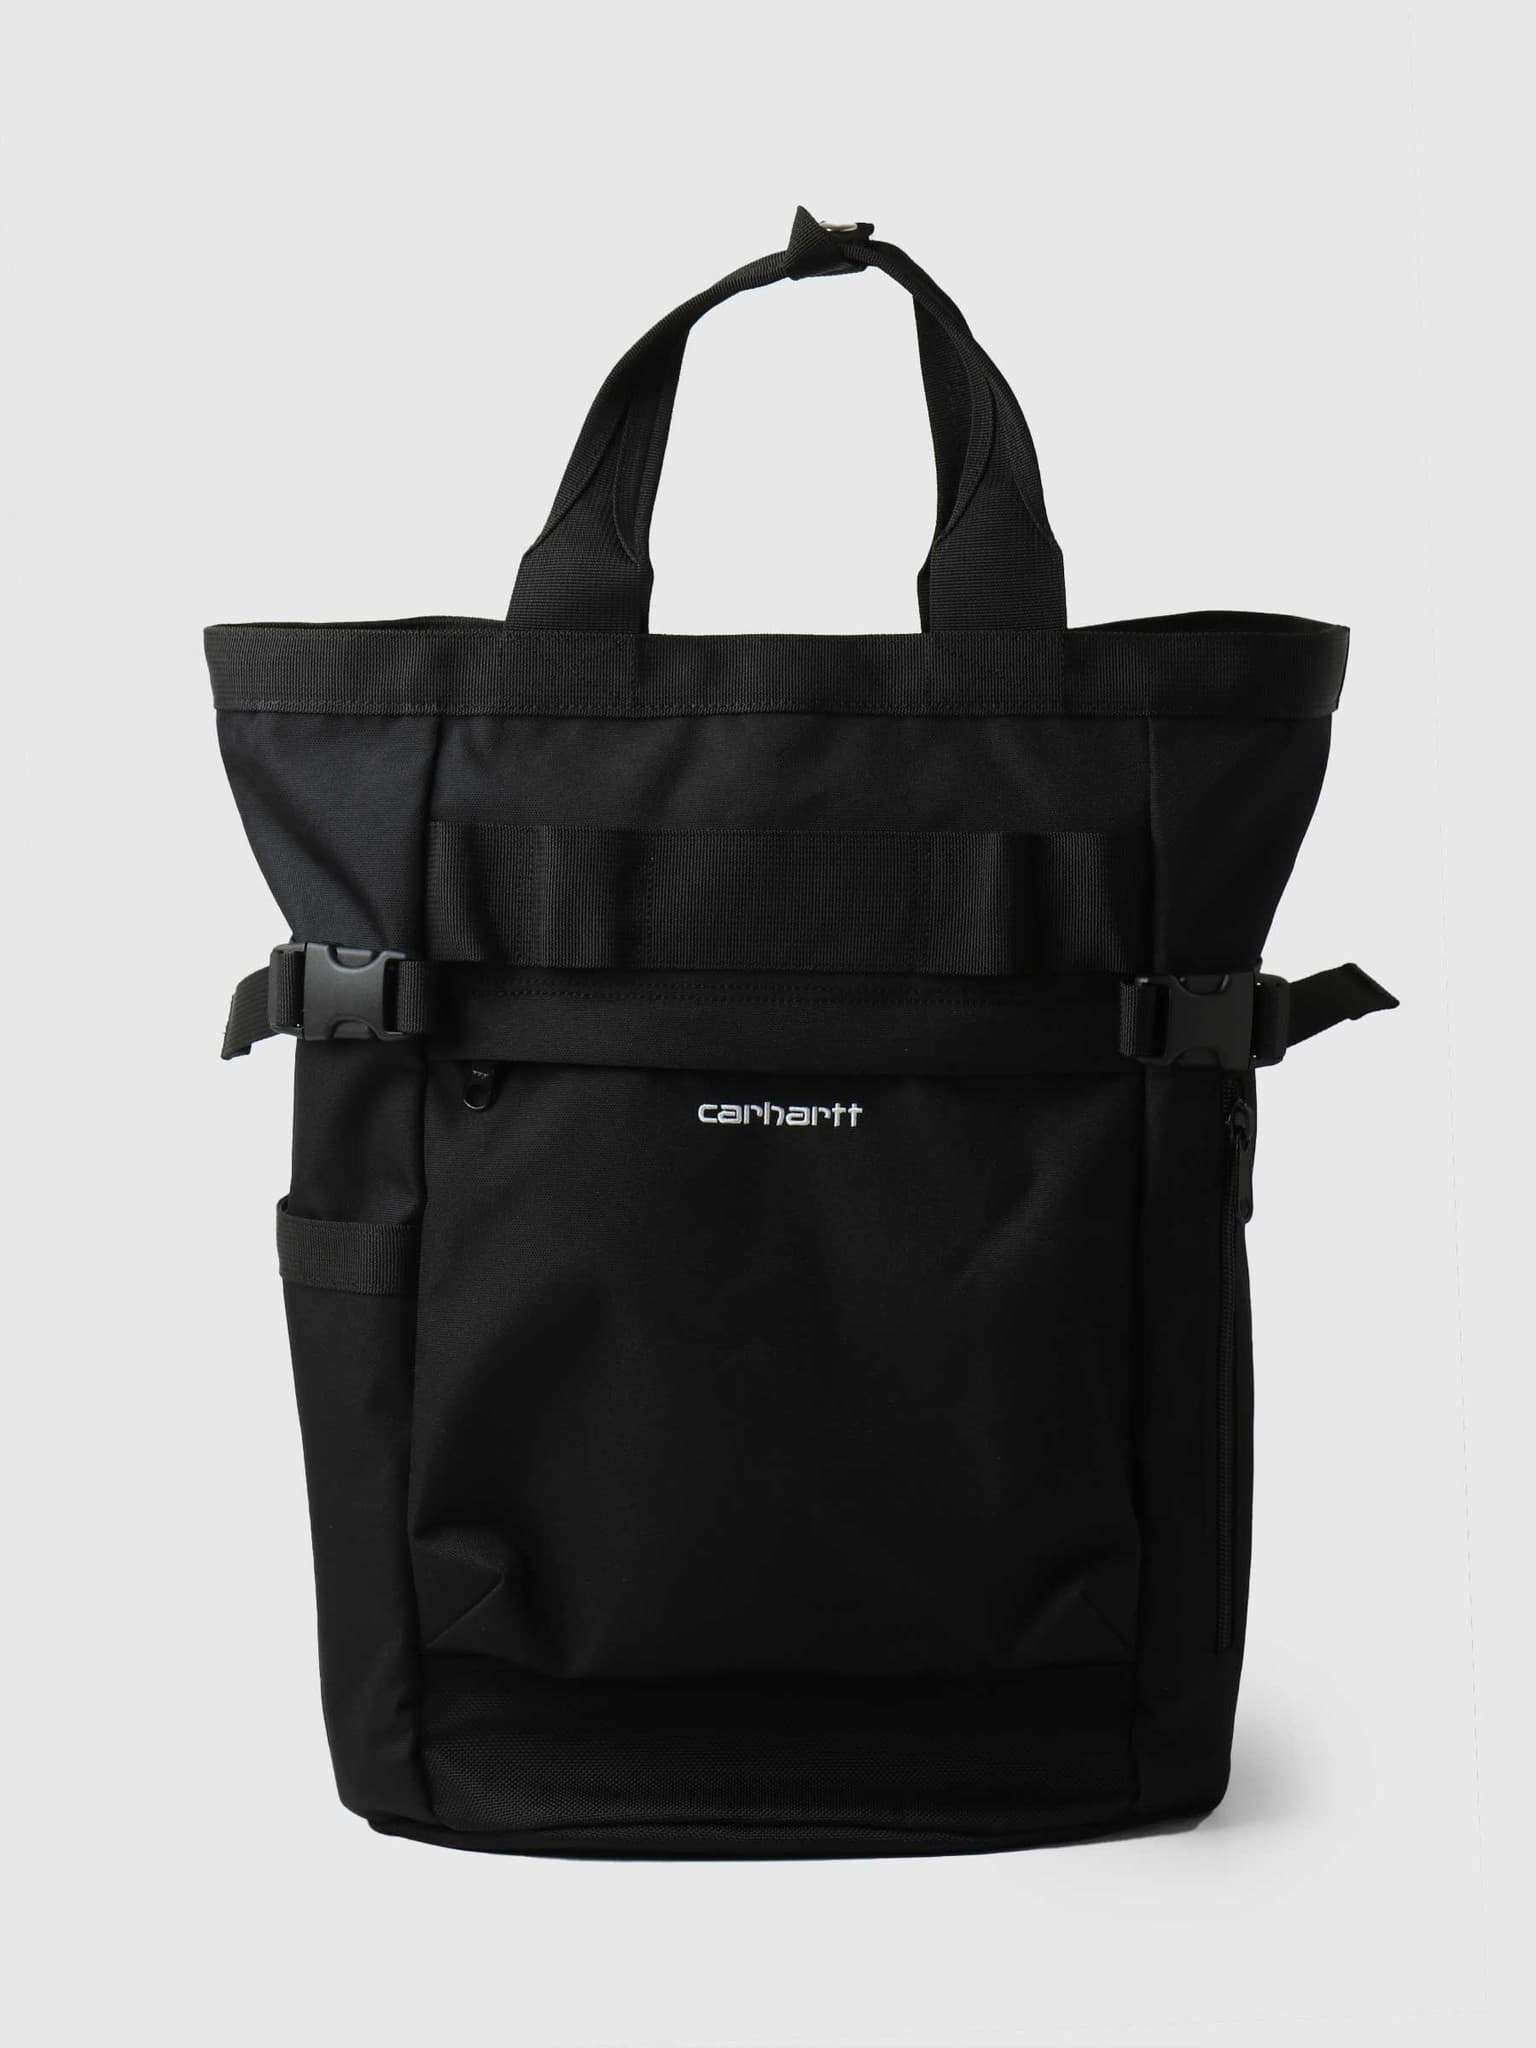 Payton Carrier Backpack Black White I026874